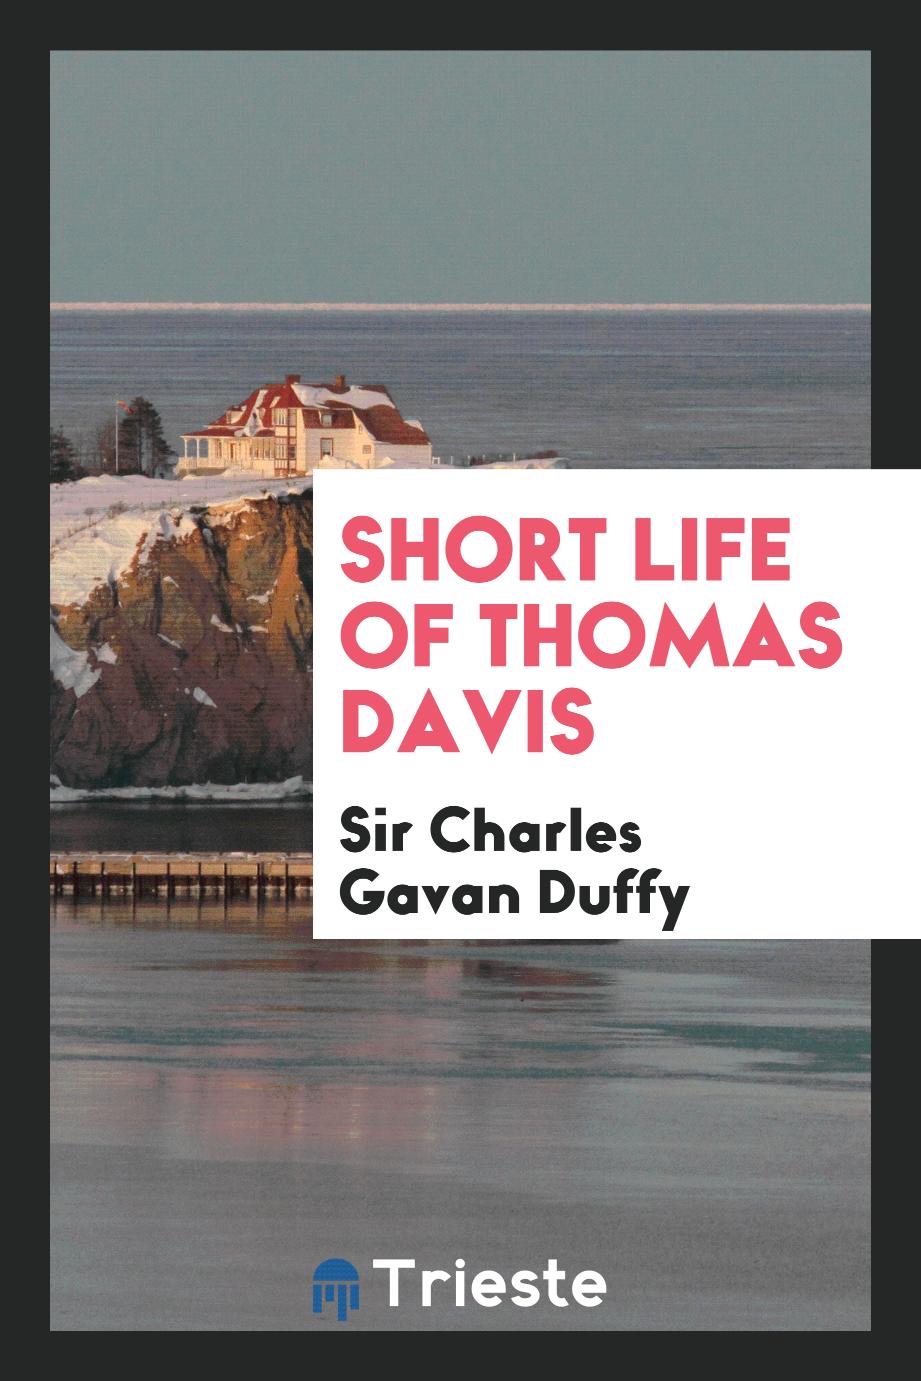 Short life of Thomas Davis